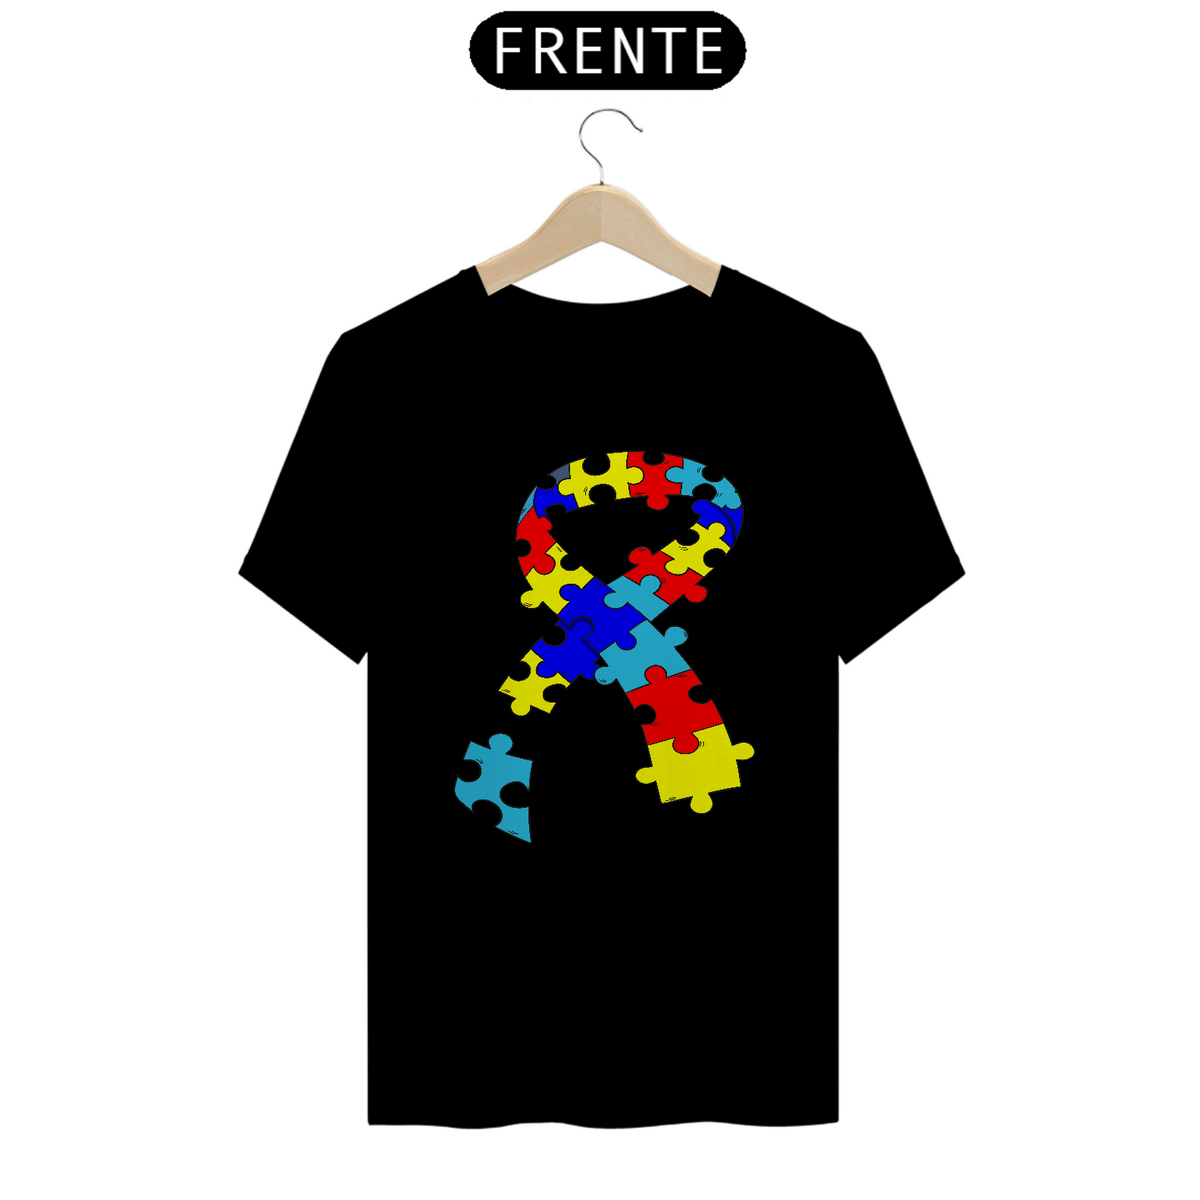 Nome do produto: T-shirt - autismo (símbolo laço)